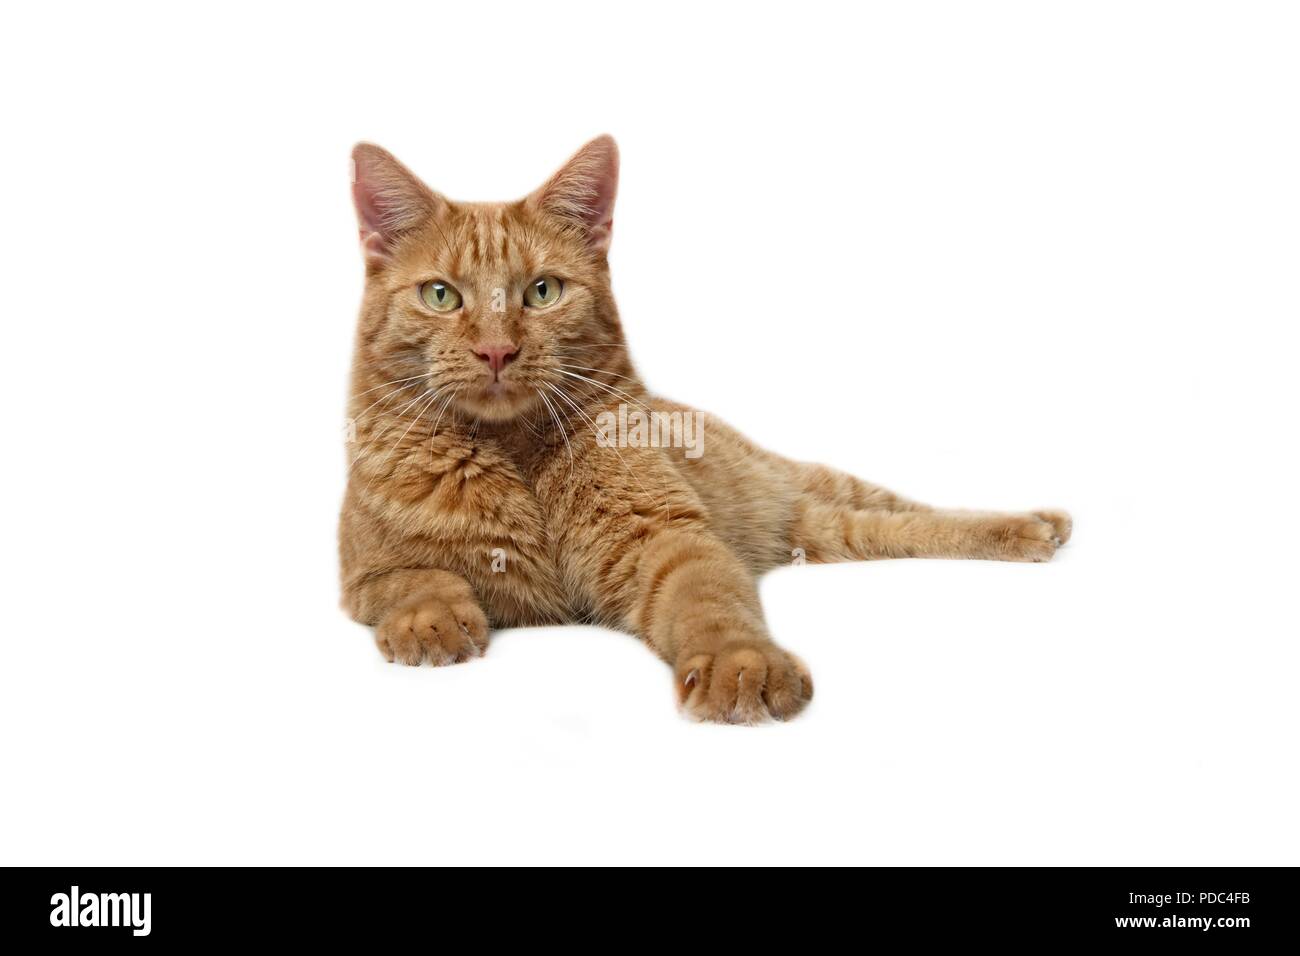 Gingembre Cute cat allongé et curieux de voir l'appareil photo - Isolé sur whit Banque D'Images